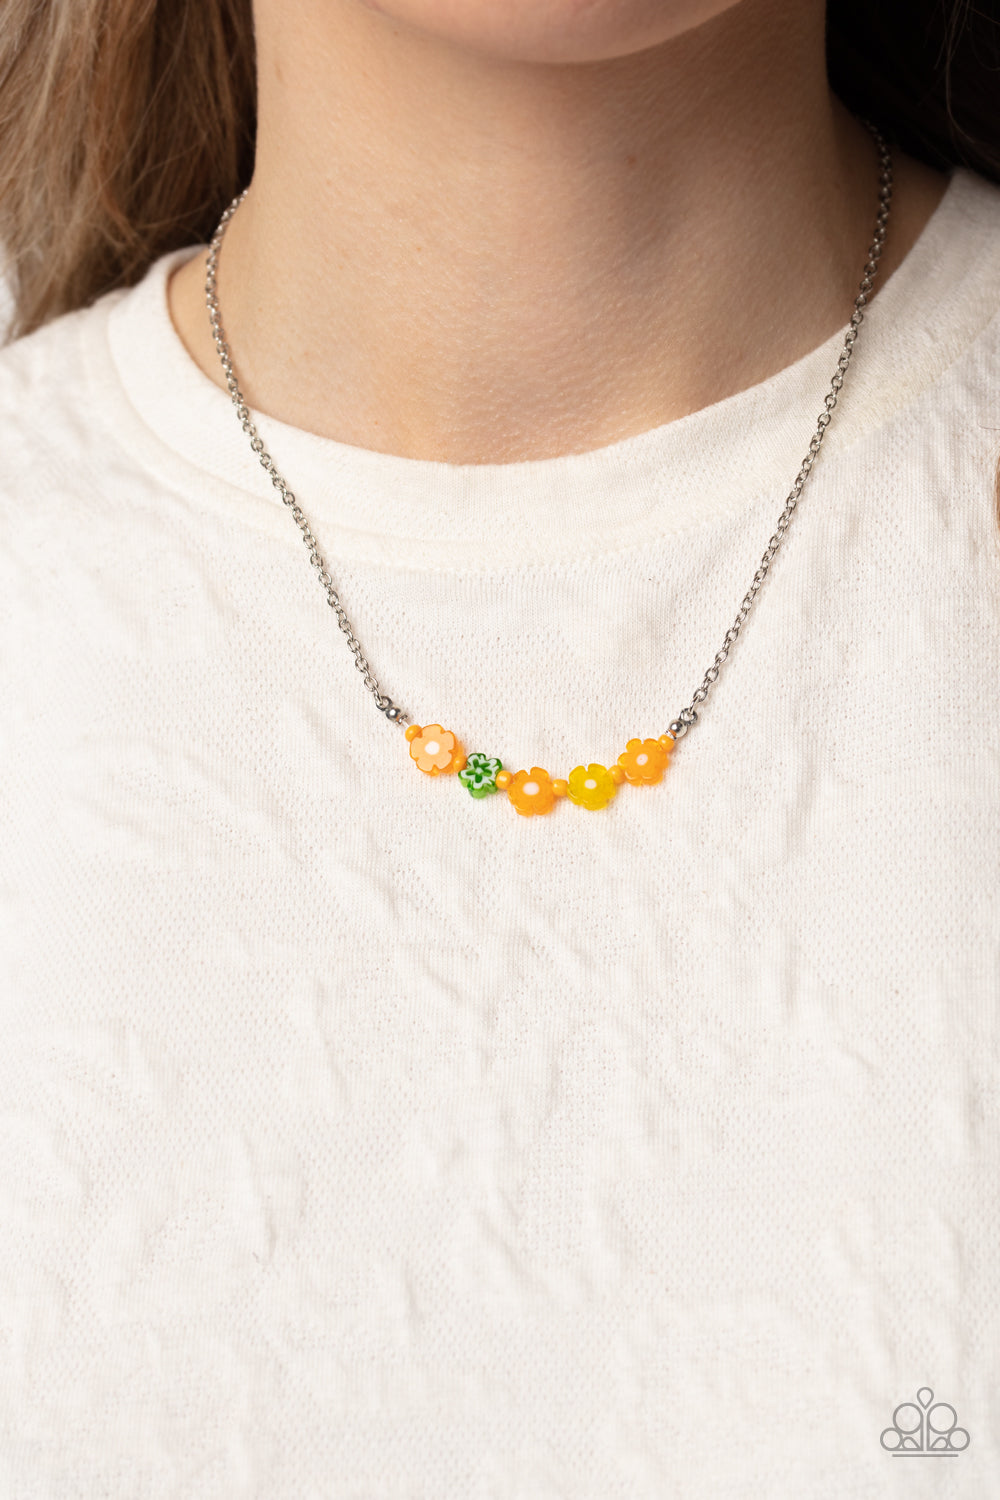 Paparazzi “BOUQUET We Go” Orange Necklace Earring Set - CindysBlingBoutique